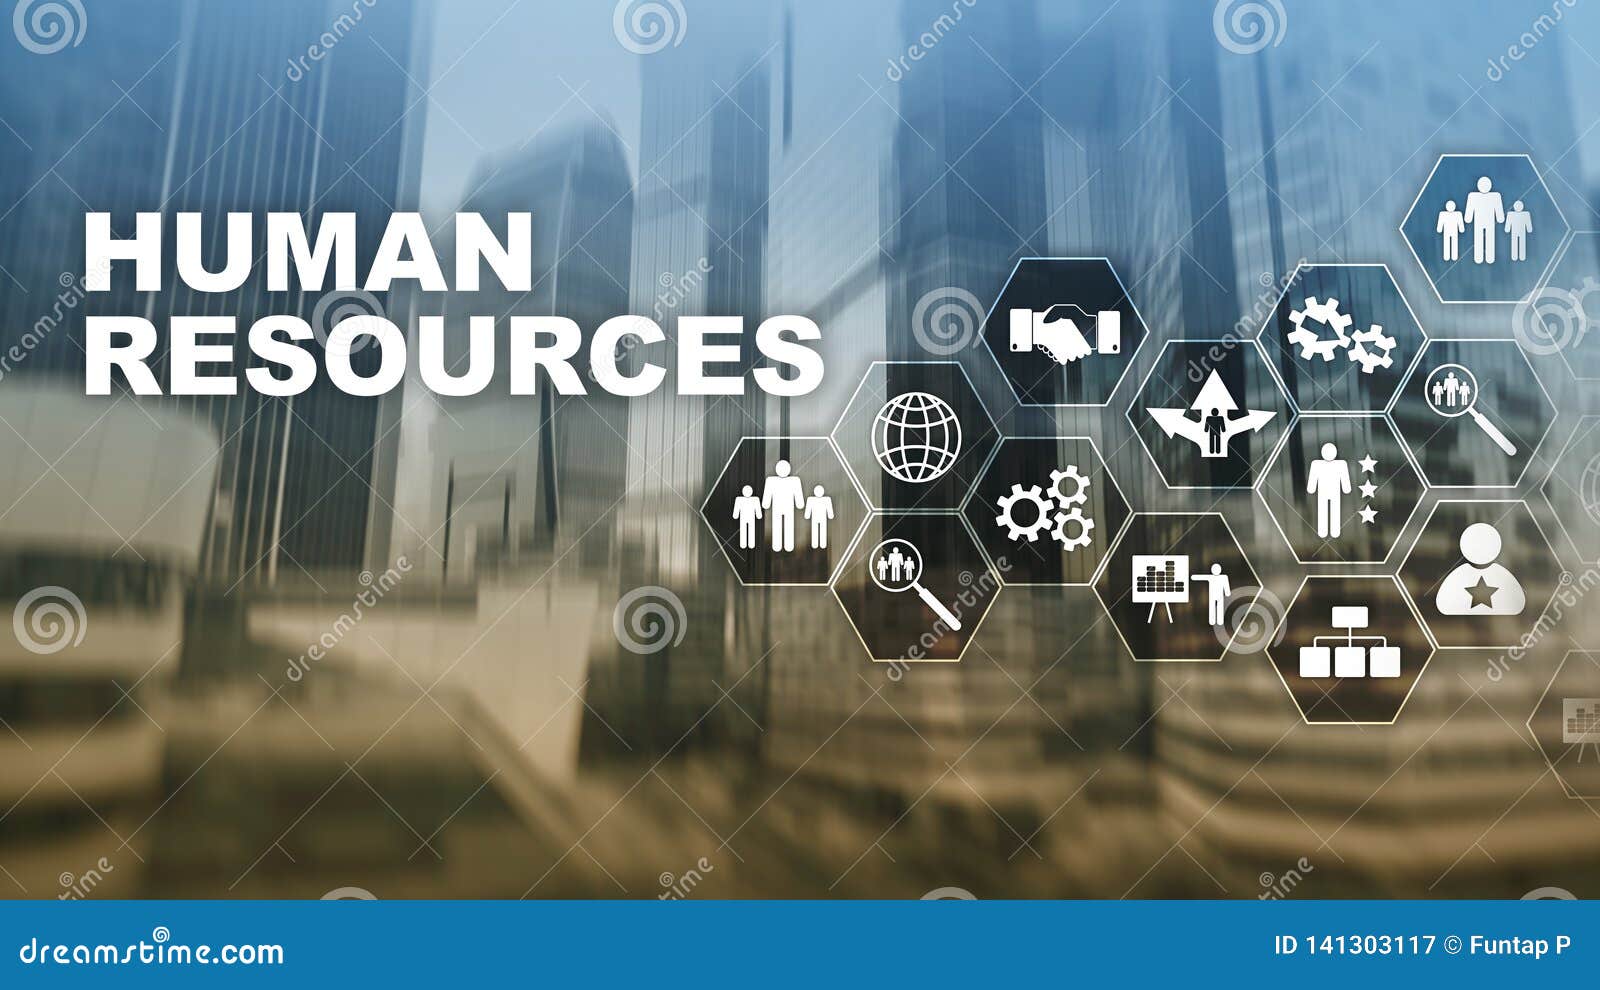 human resources hr management concept